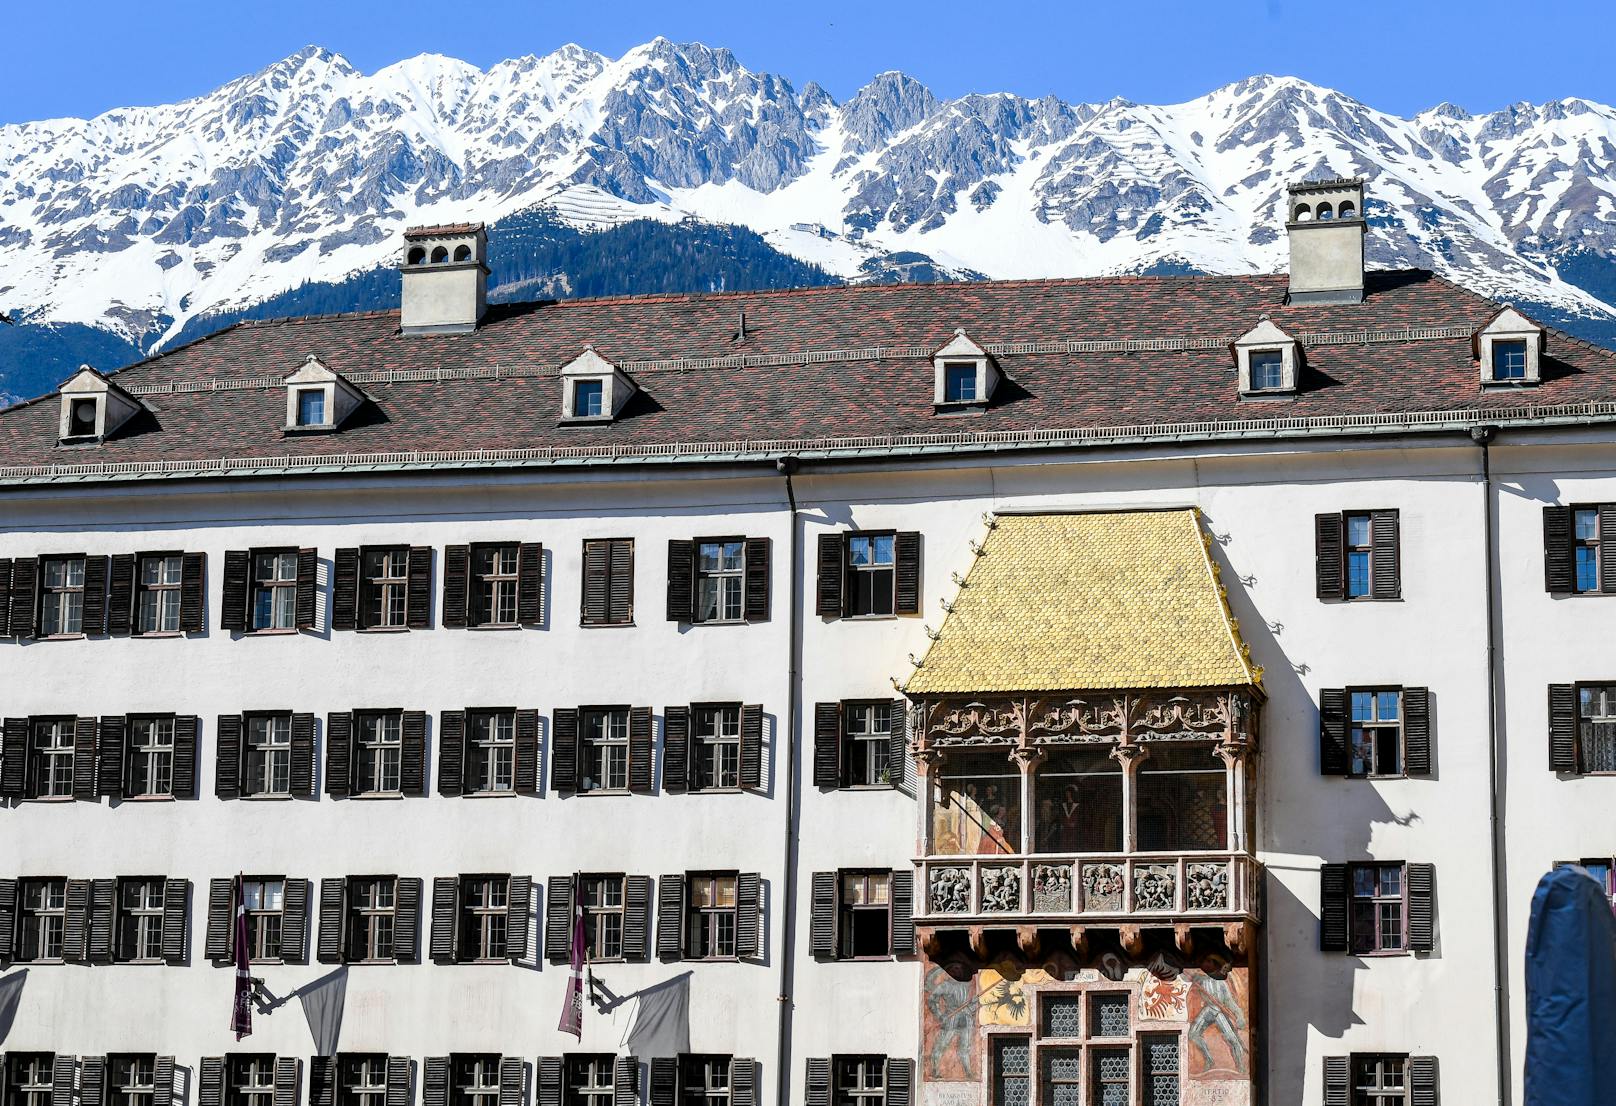 Goldenes Dachl in der Innsbrucker Innenstadt mit Alpen-Nordkette im Hintergrund